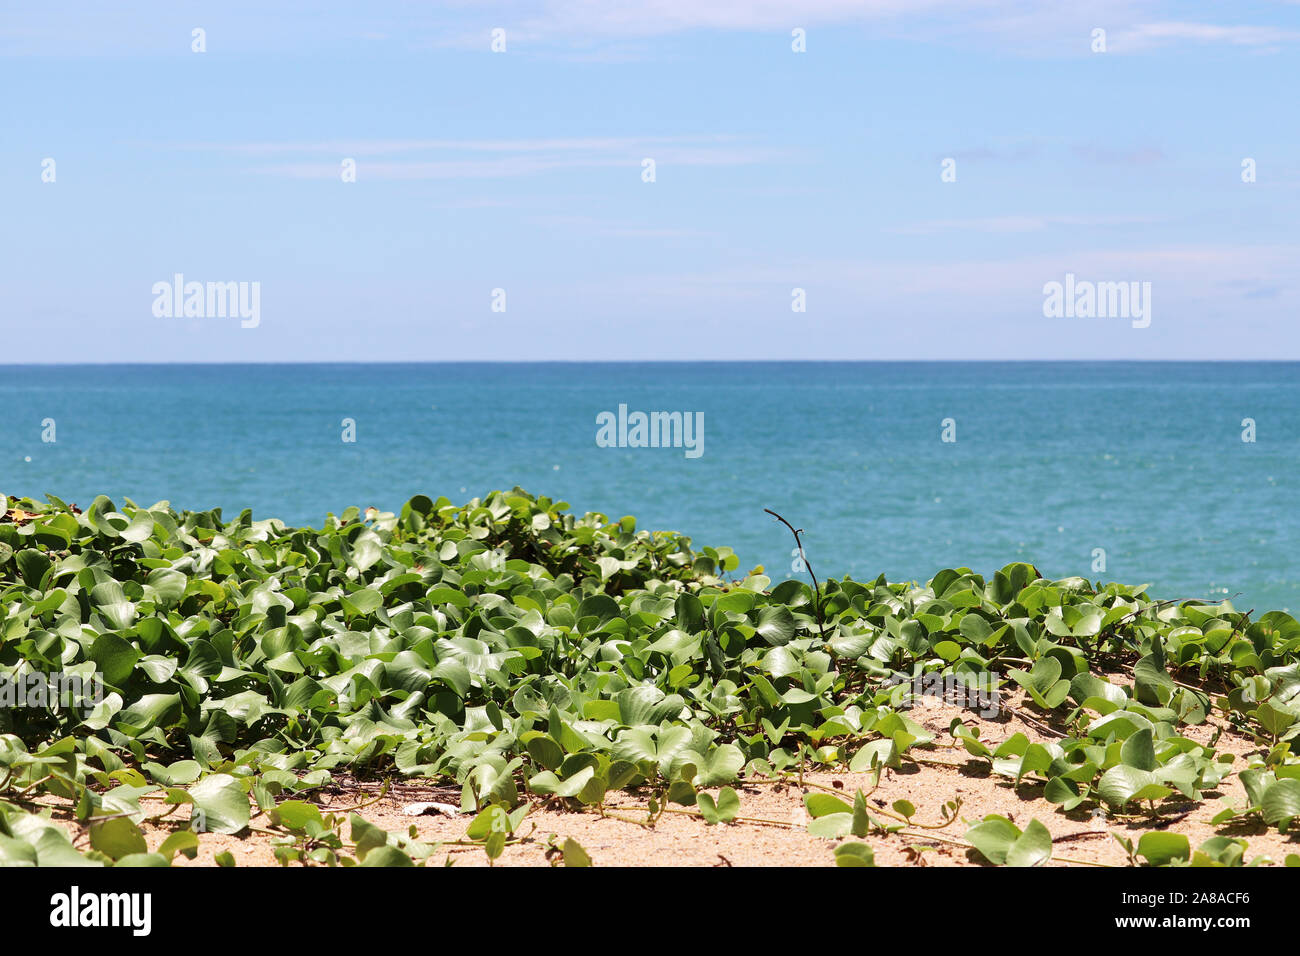 Tropical beach, vue sur la mer bleue et le ciel par les plantes vertes, selective focus. Arrière-plan avec une copie gratuite de l'espace pour des vacances et voyage Banque D'Images